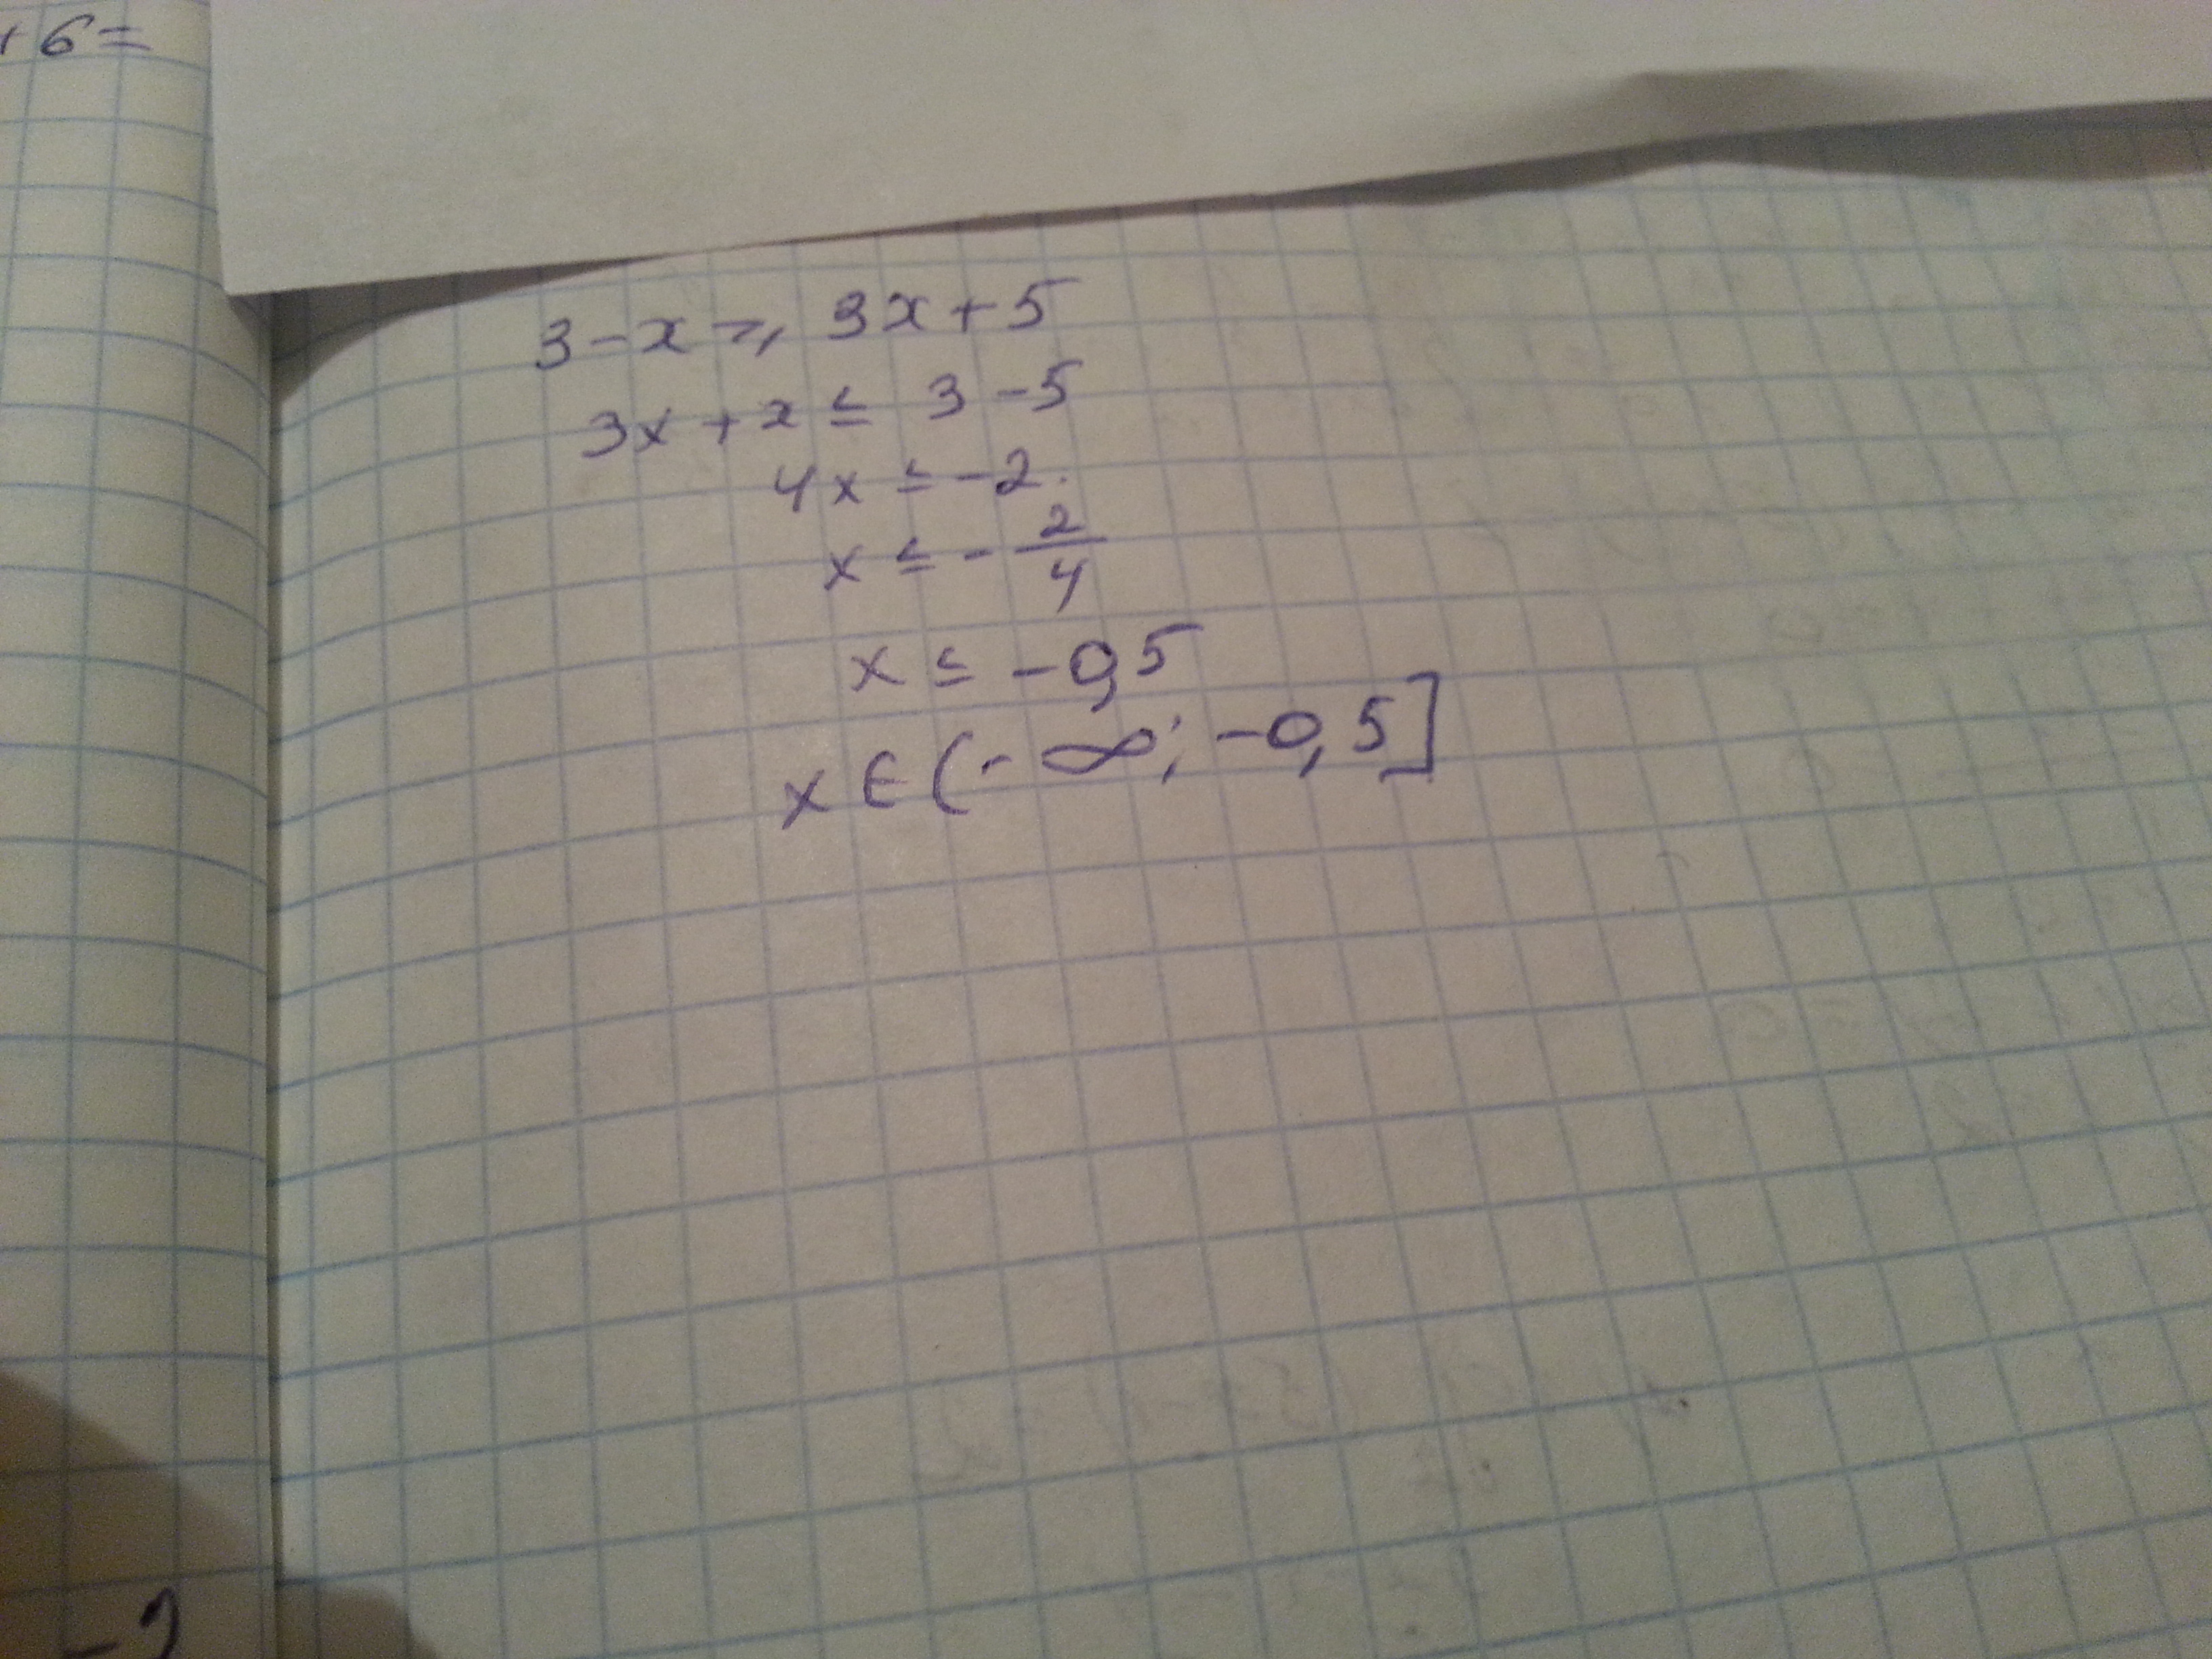 Решение неравенств х 3 3х 5. 3x-(x-3)<=5x. Укажите решение неравенства -3-5x< x+3. 3-X 3x+5 решение неравенства. 3-X>3x+5 укажите решение.